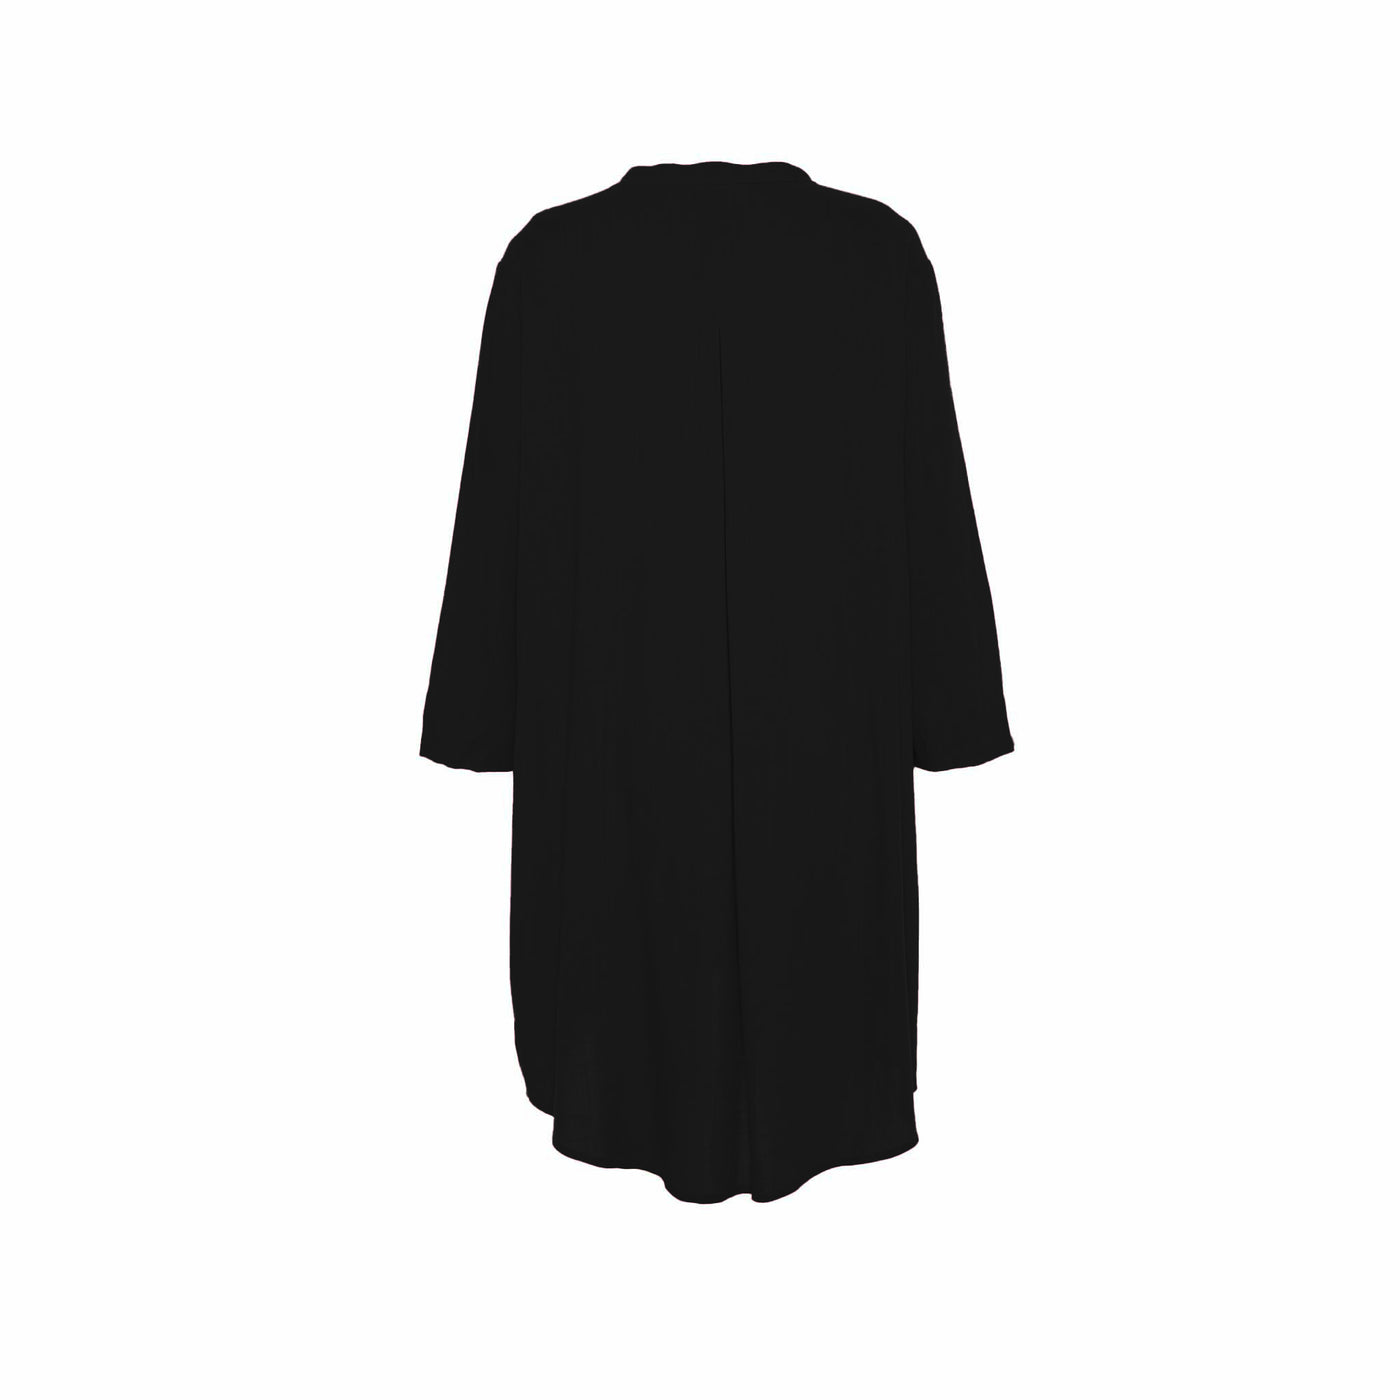 Gozzip - Monna skyrtu túnika